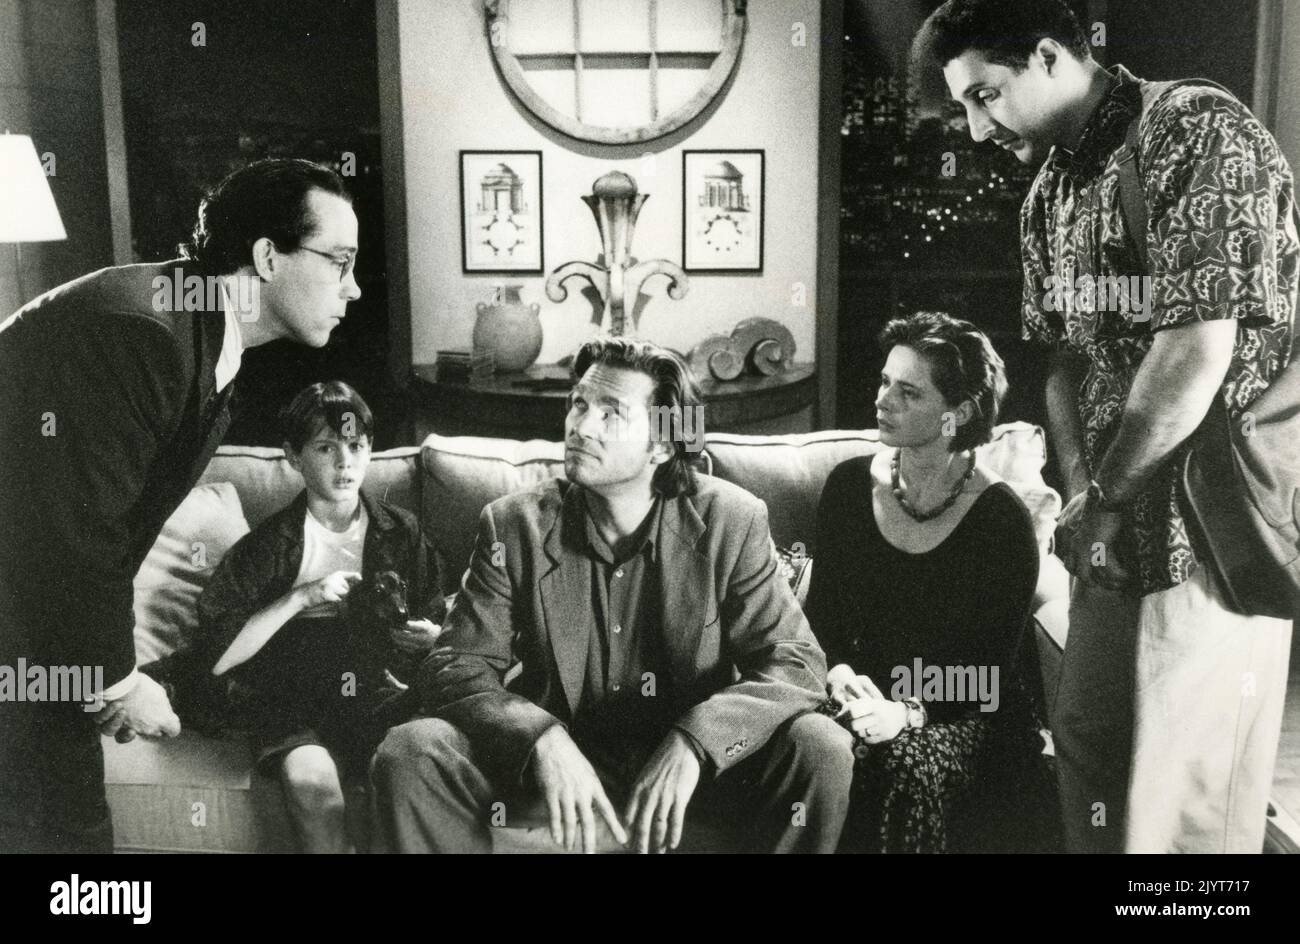 Gli attori americani Tom Hulce, Jeff Bridges, Isabella Rossellini e John Turro nel film Fearless, USA 1993 Foto Stock